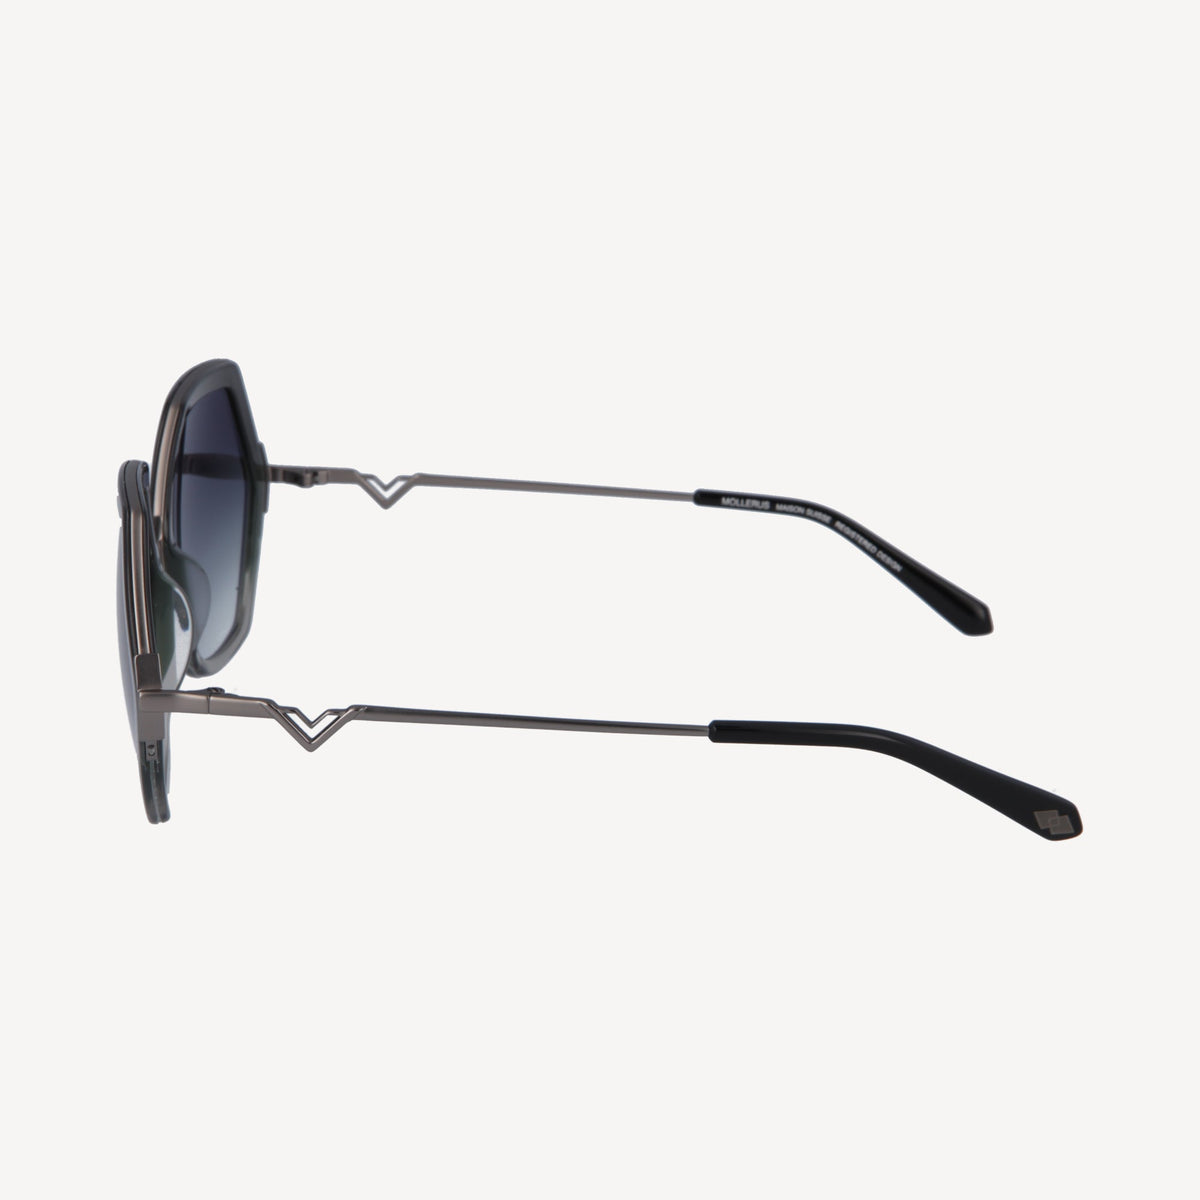 AGNEL | Sunglasses classic black/old silver